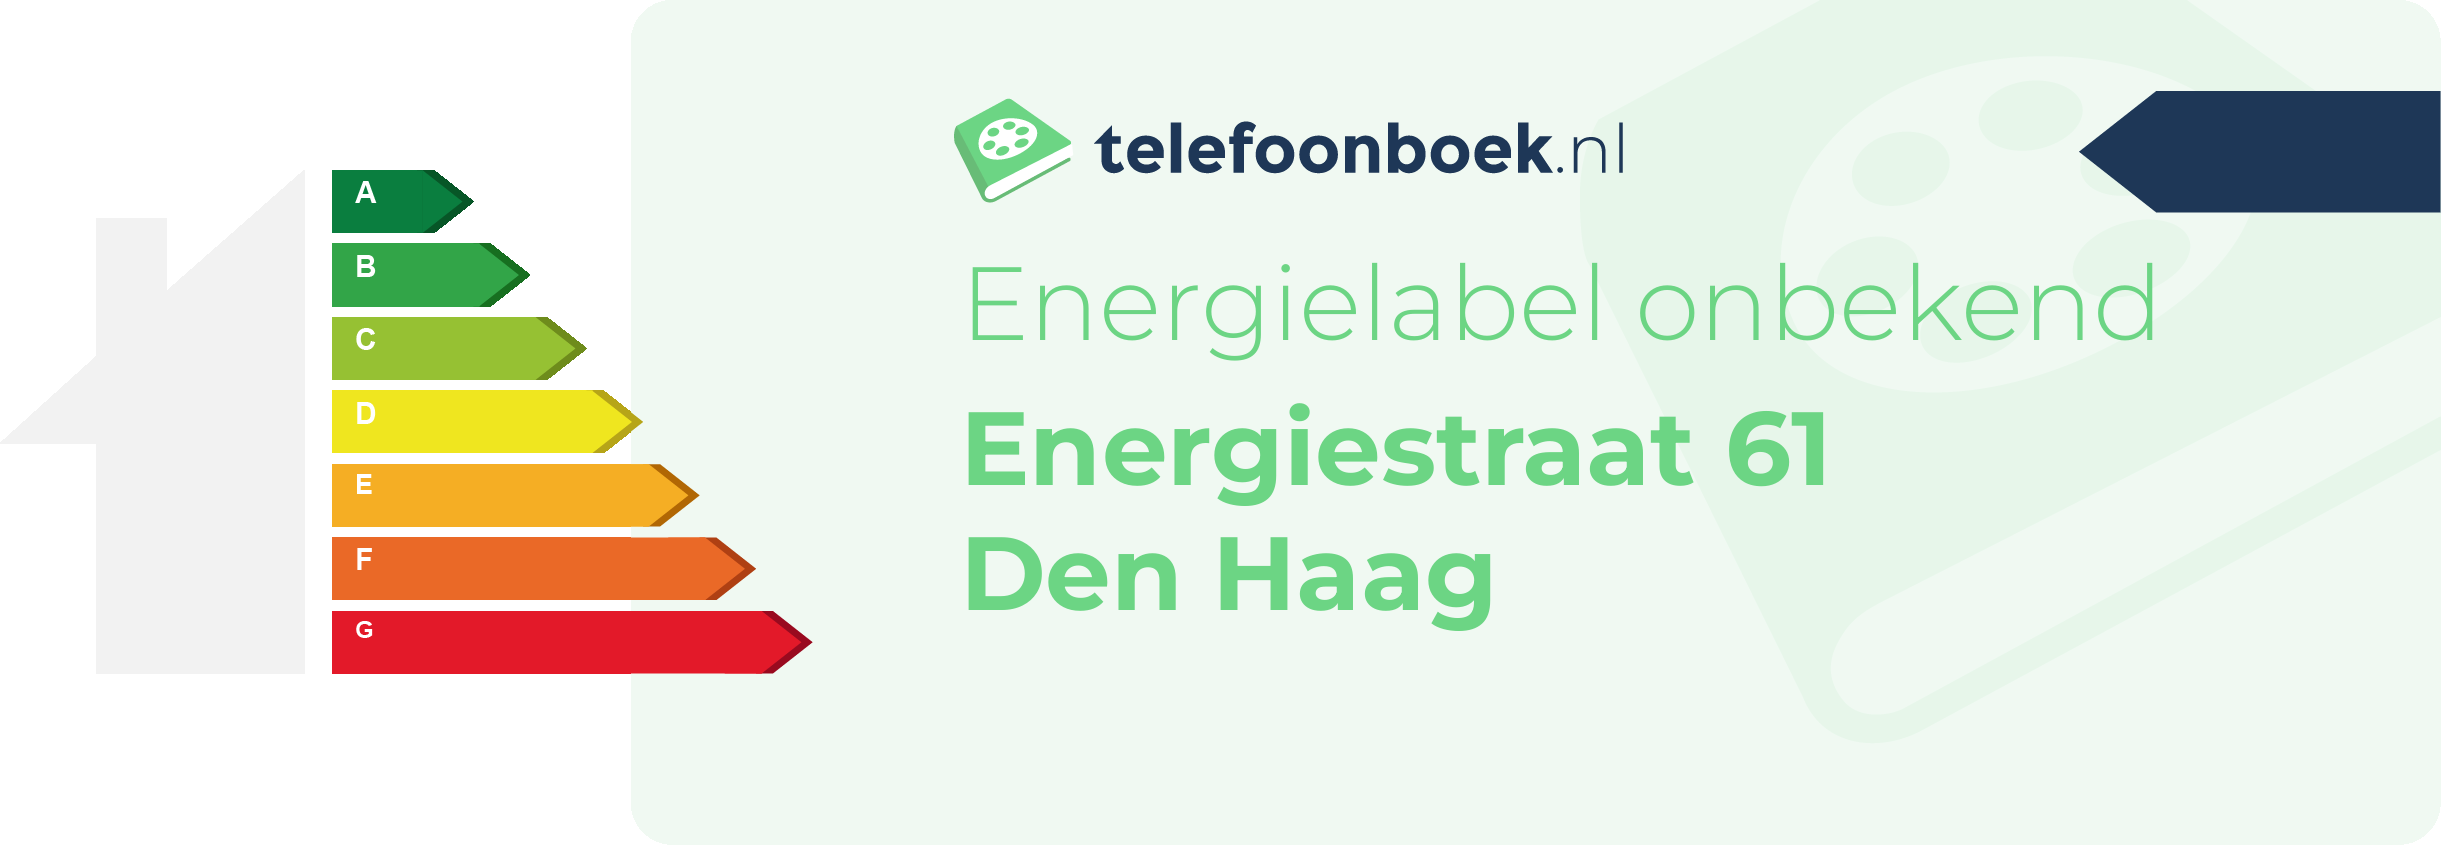 Energielabel Energiestraat 61 Den Haag